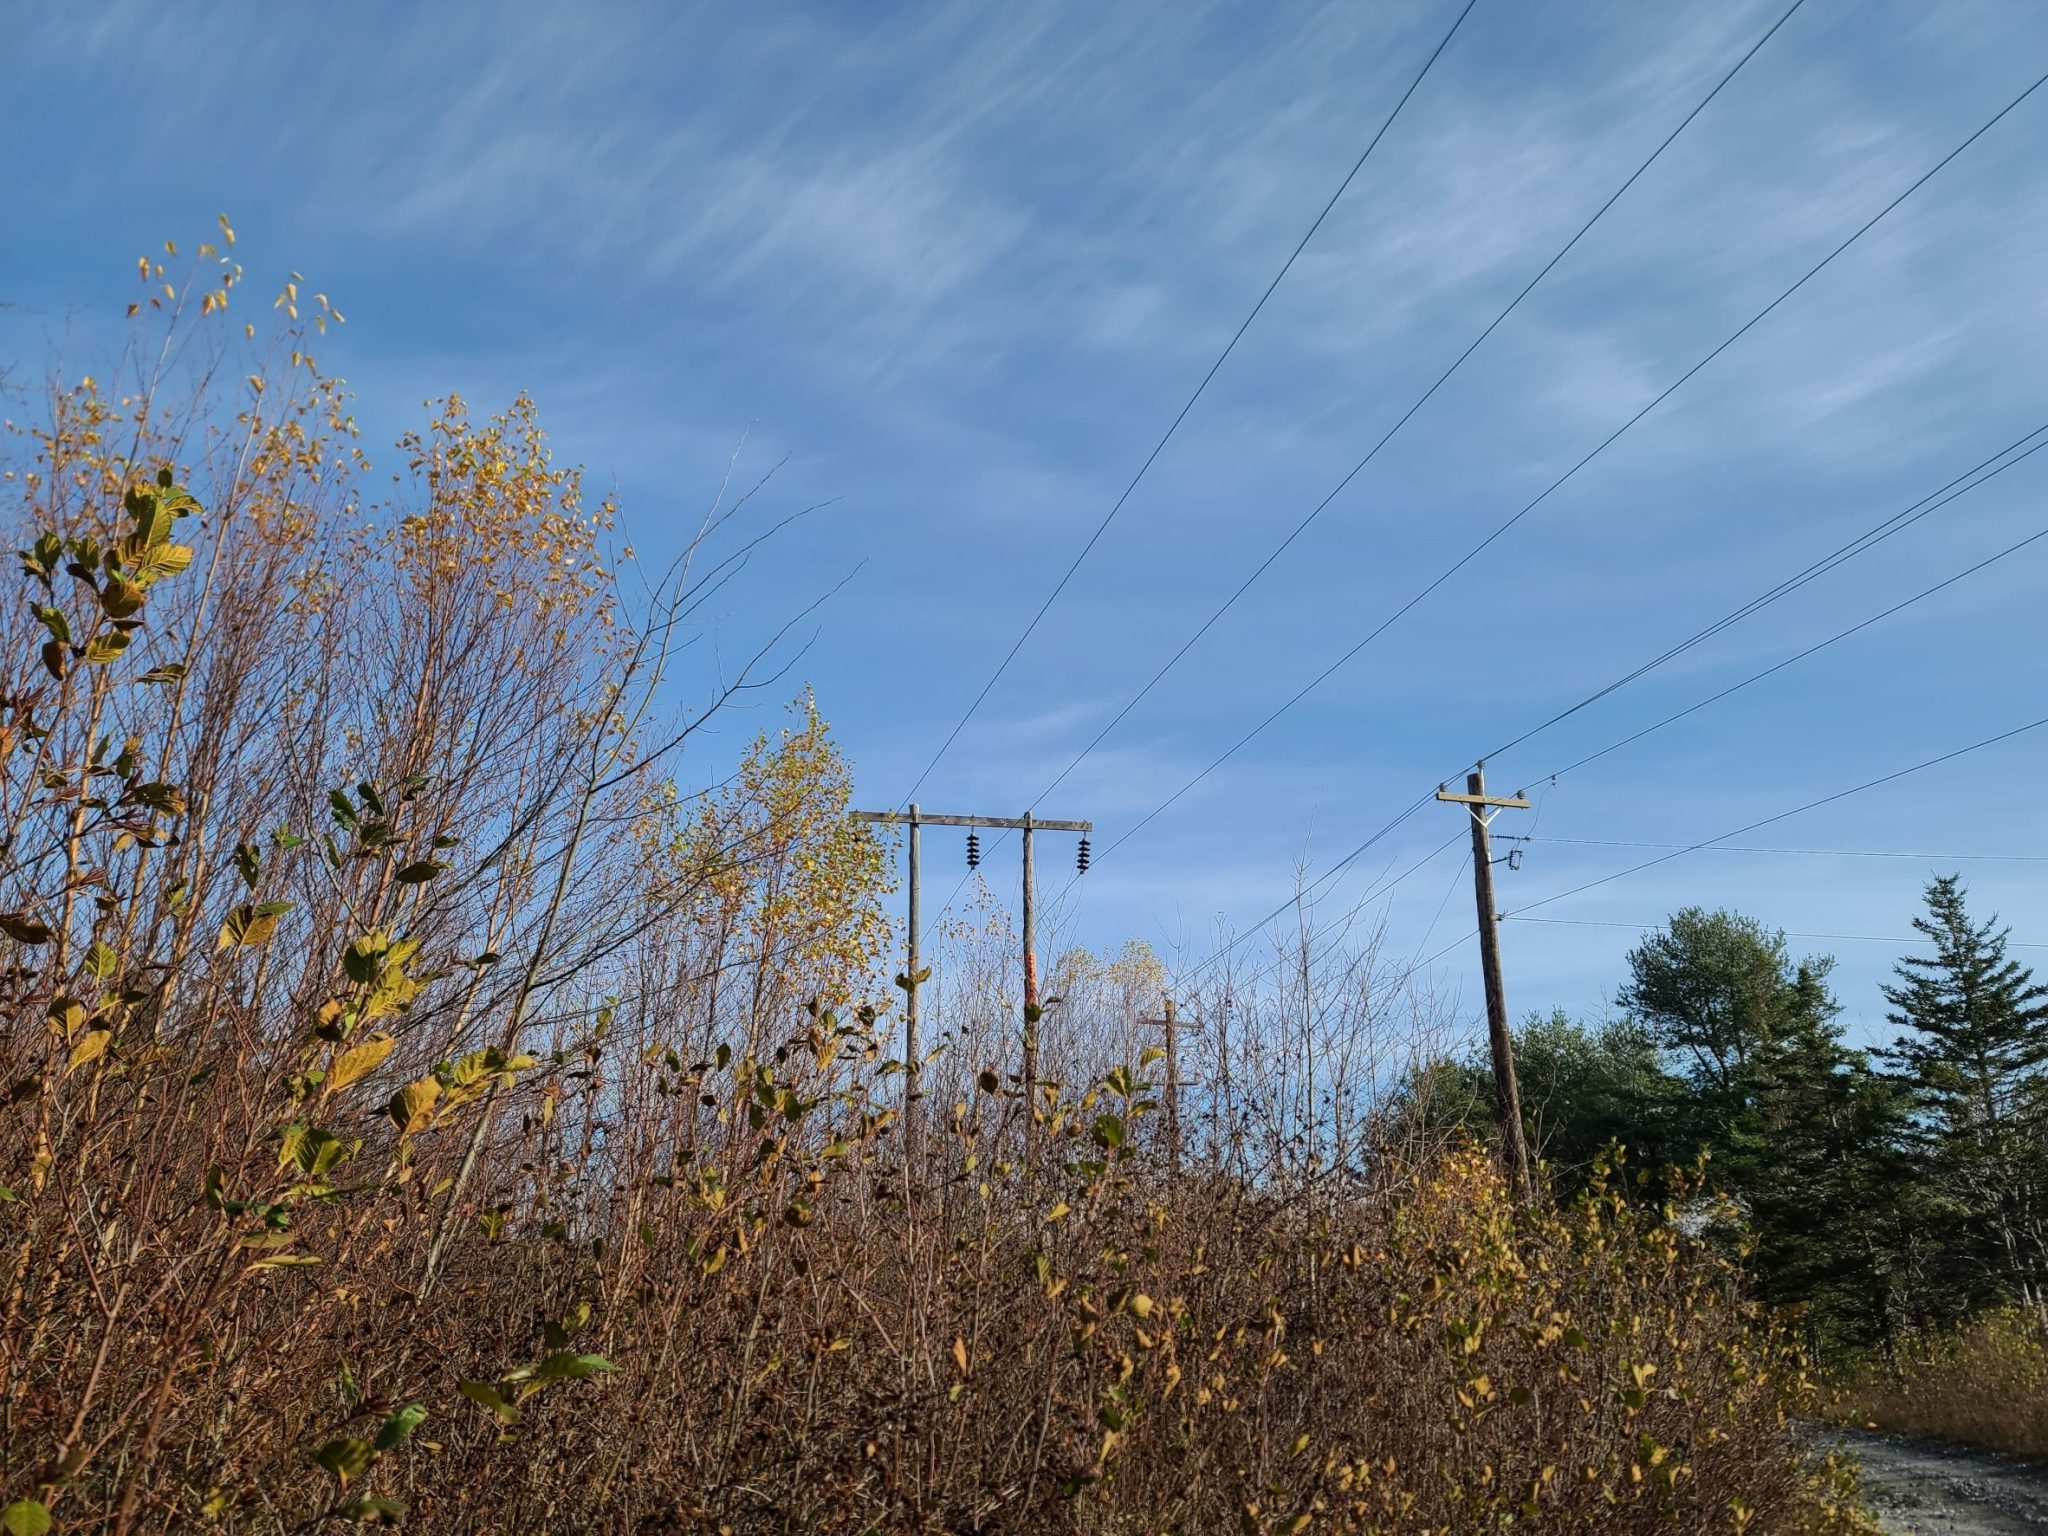 Power lines running through an overgrown area